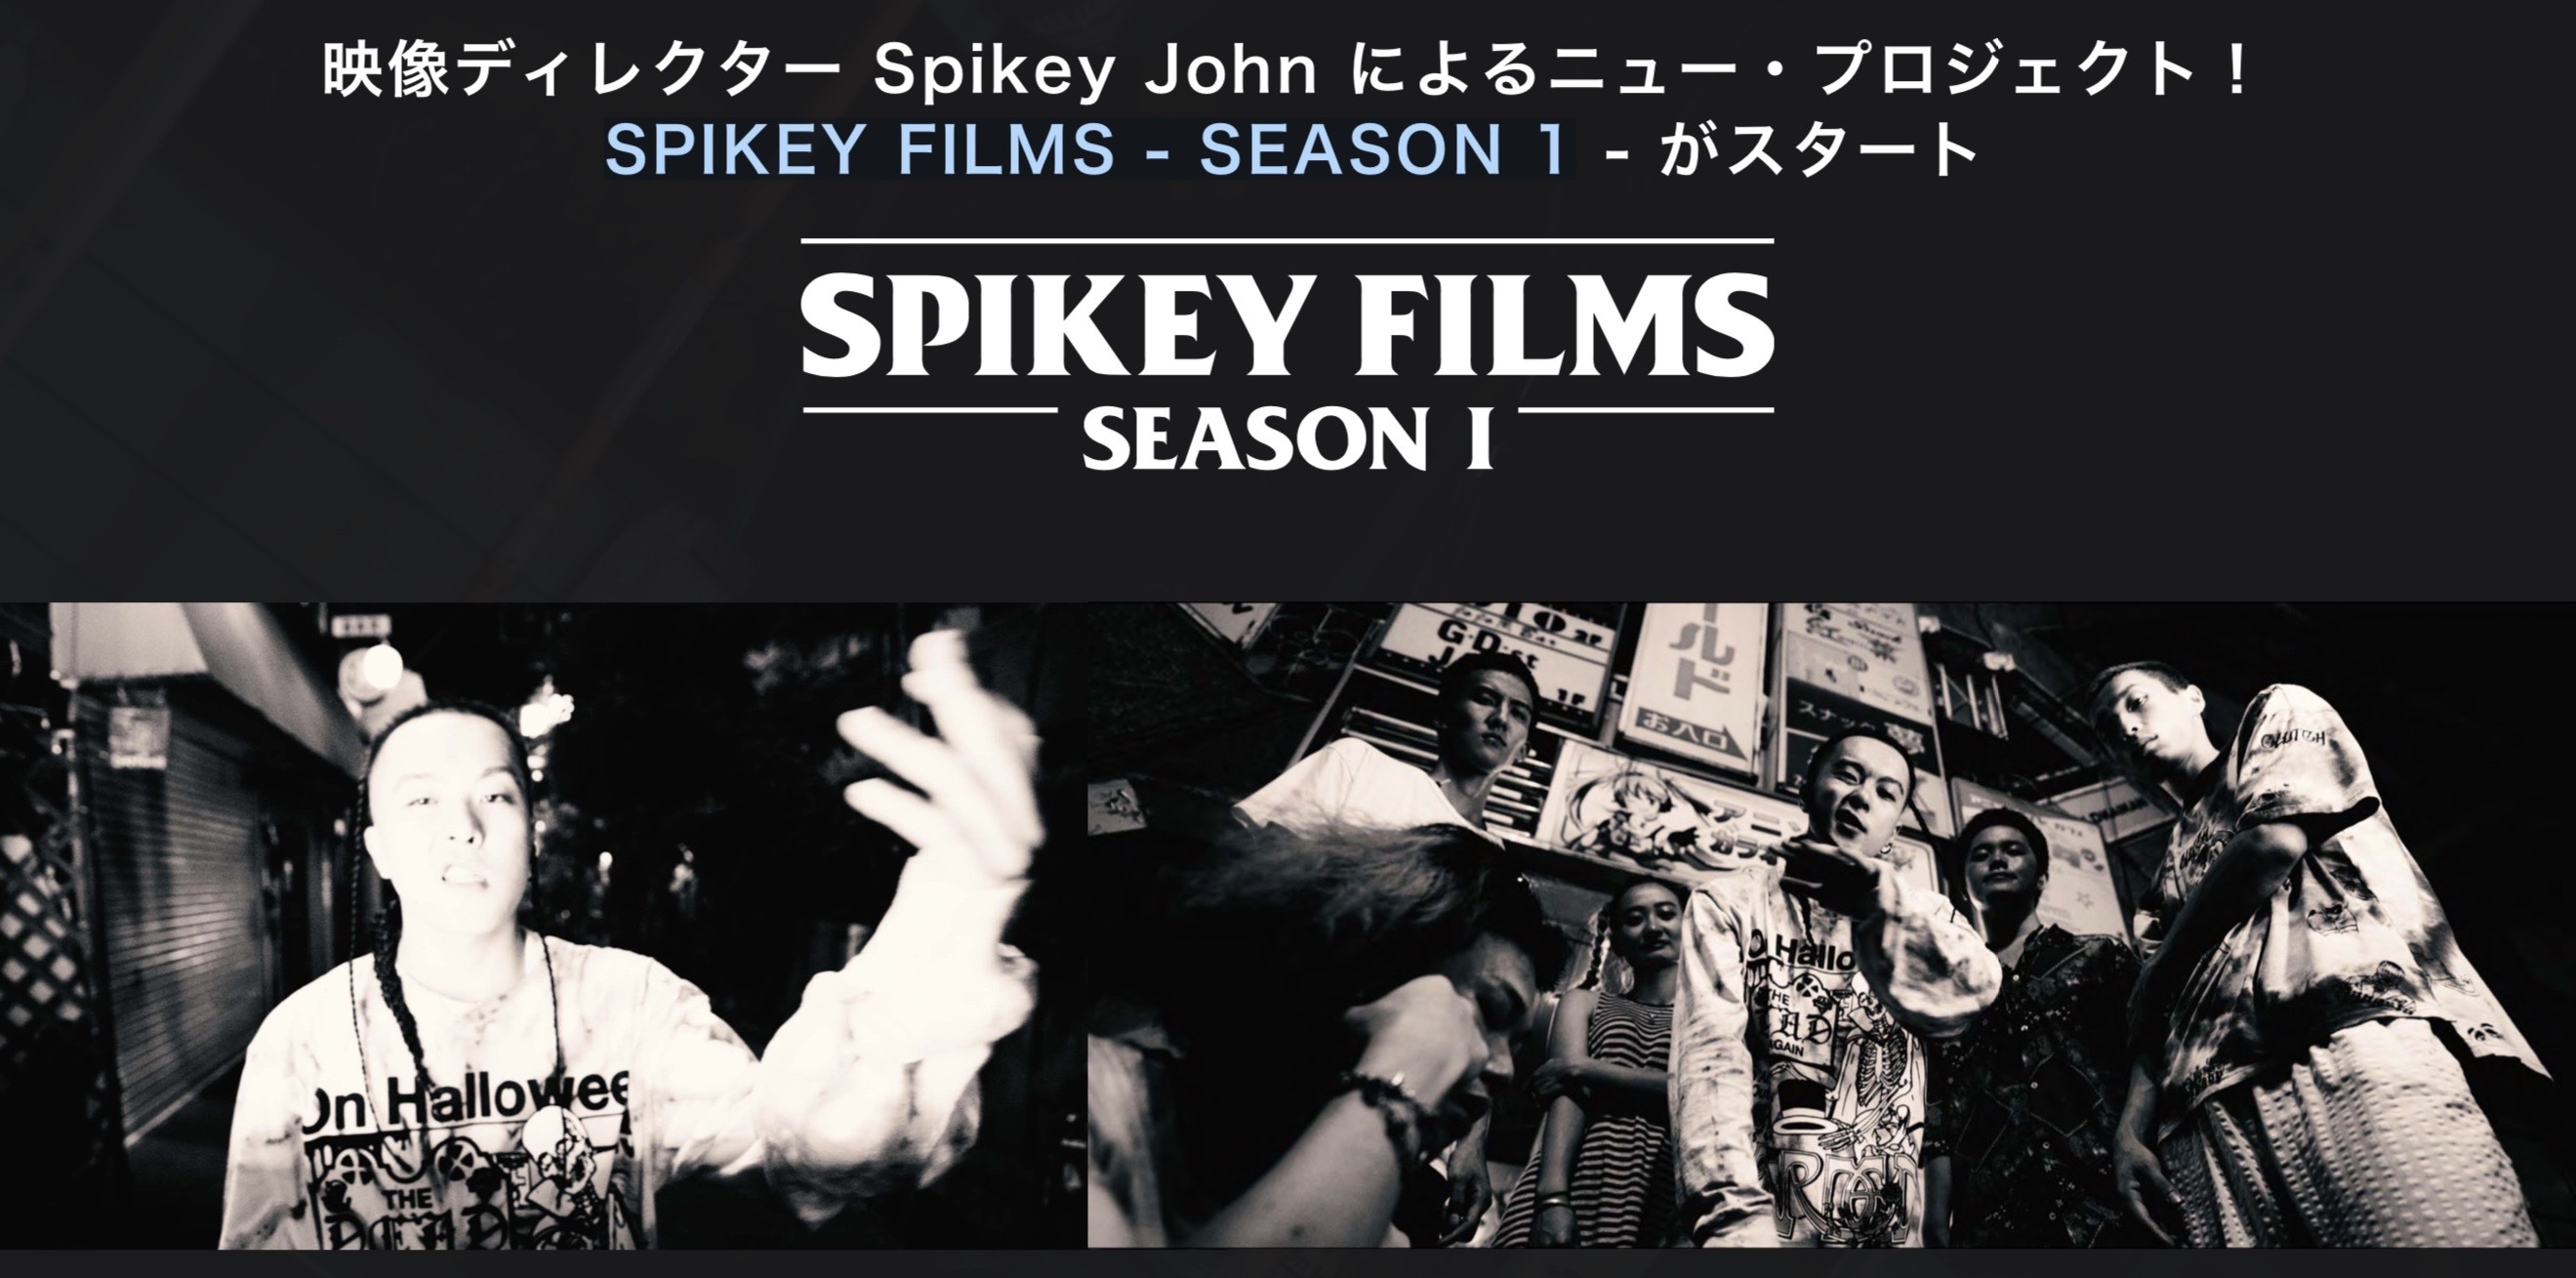 映像ディレクター Spikey John によるニュー・プロジェクト! SPIKEY FILMS - SEASON 1 - がスタート